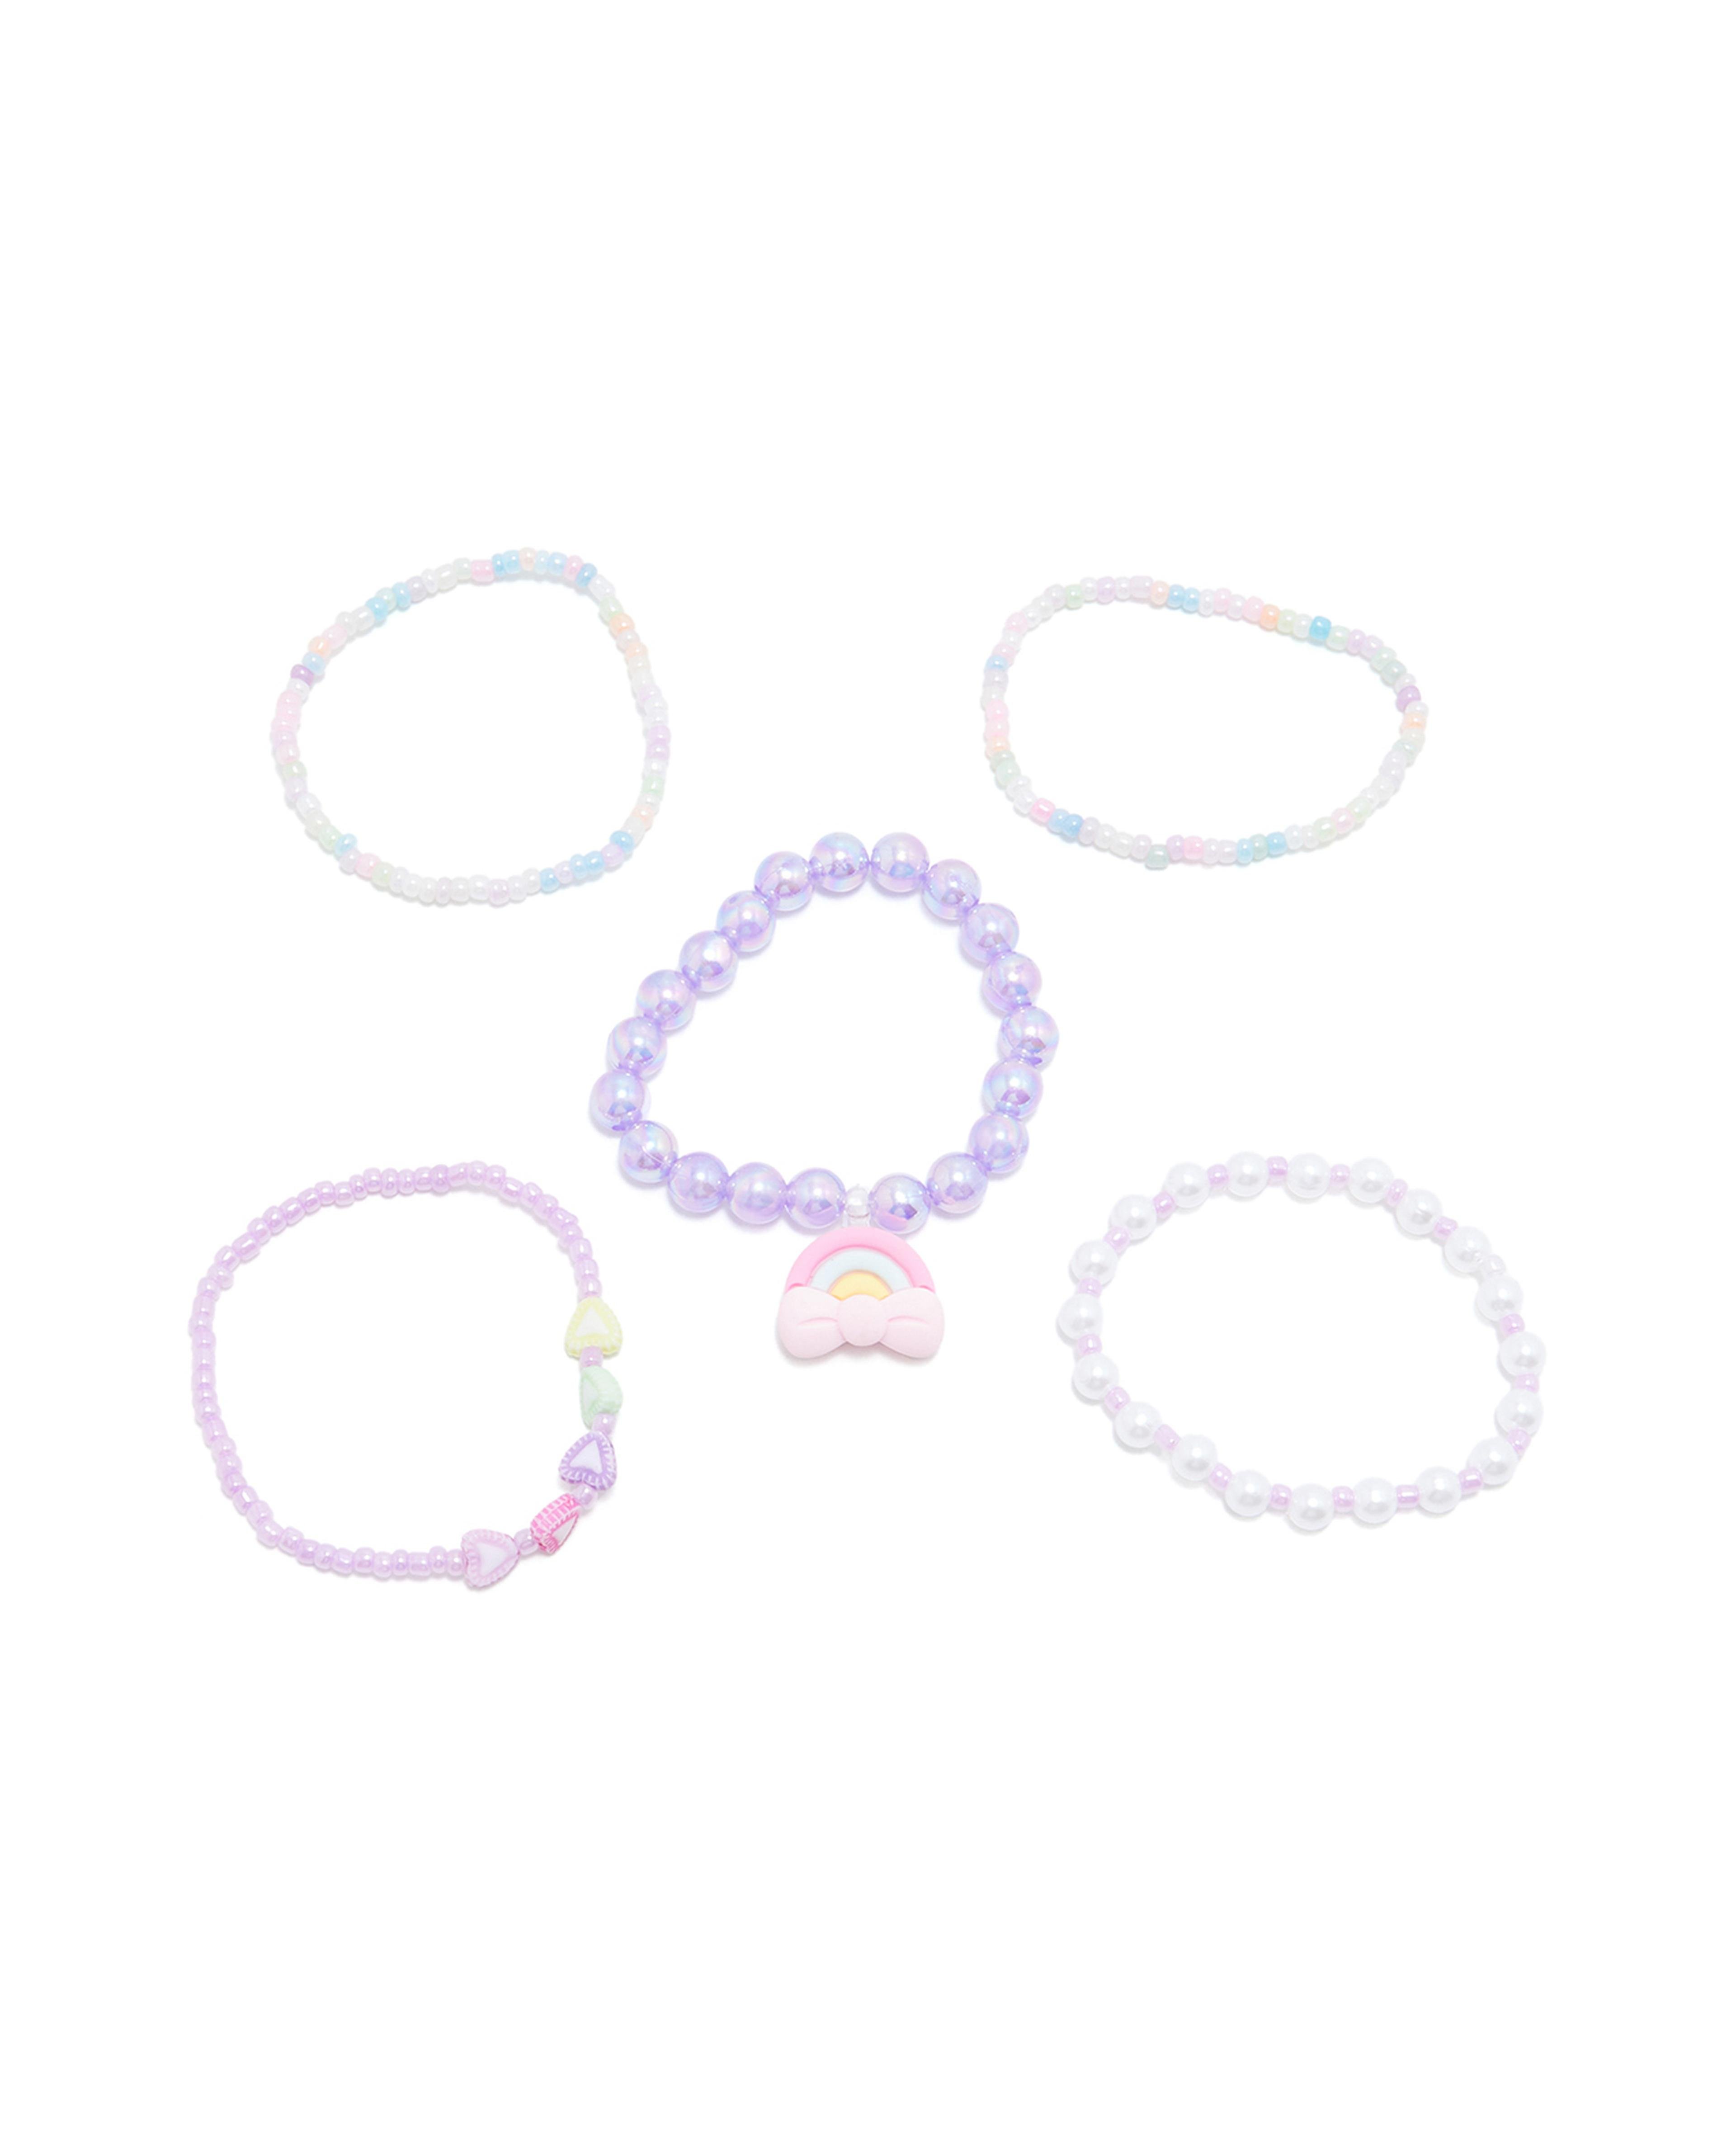 Pack of 5 Beaded Bracelets